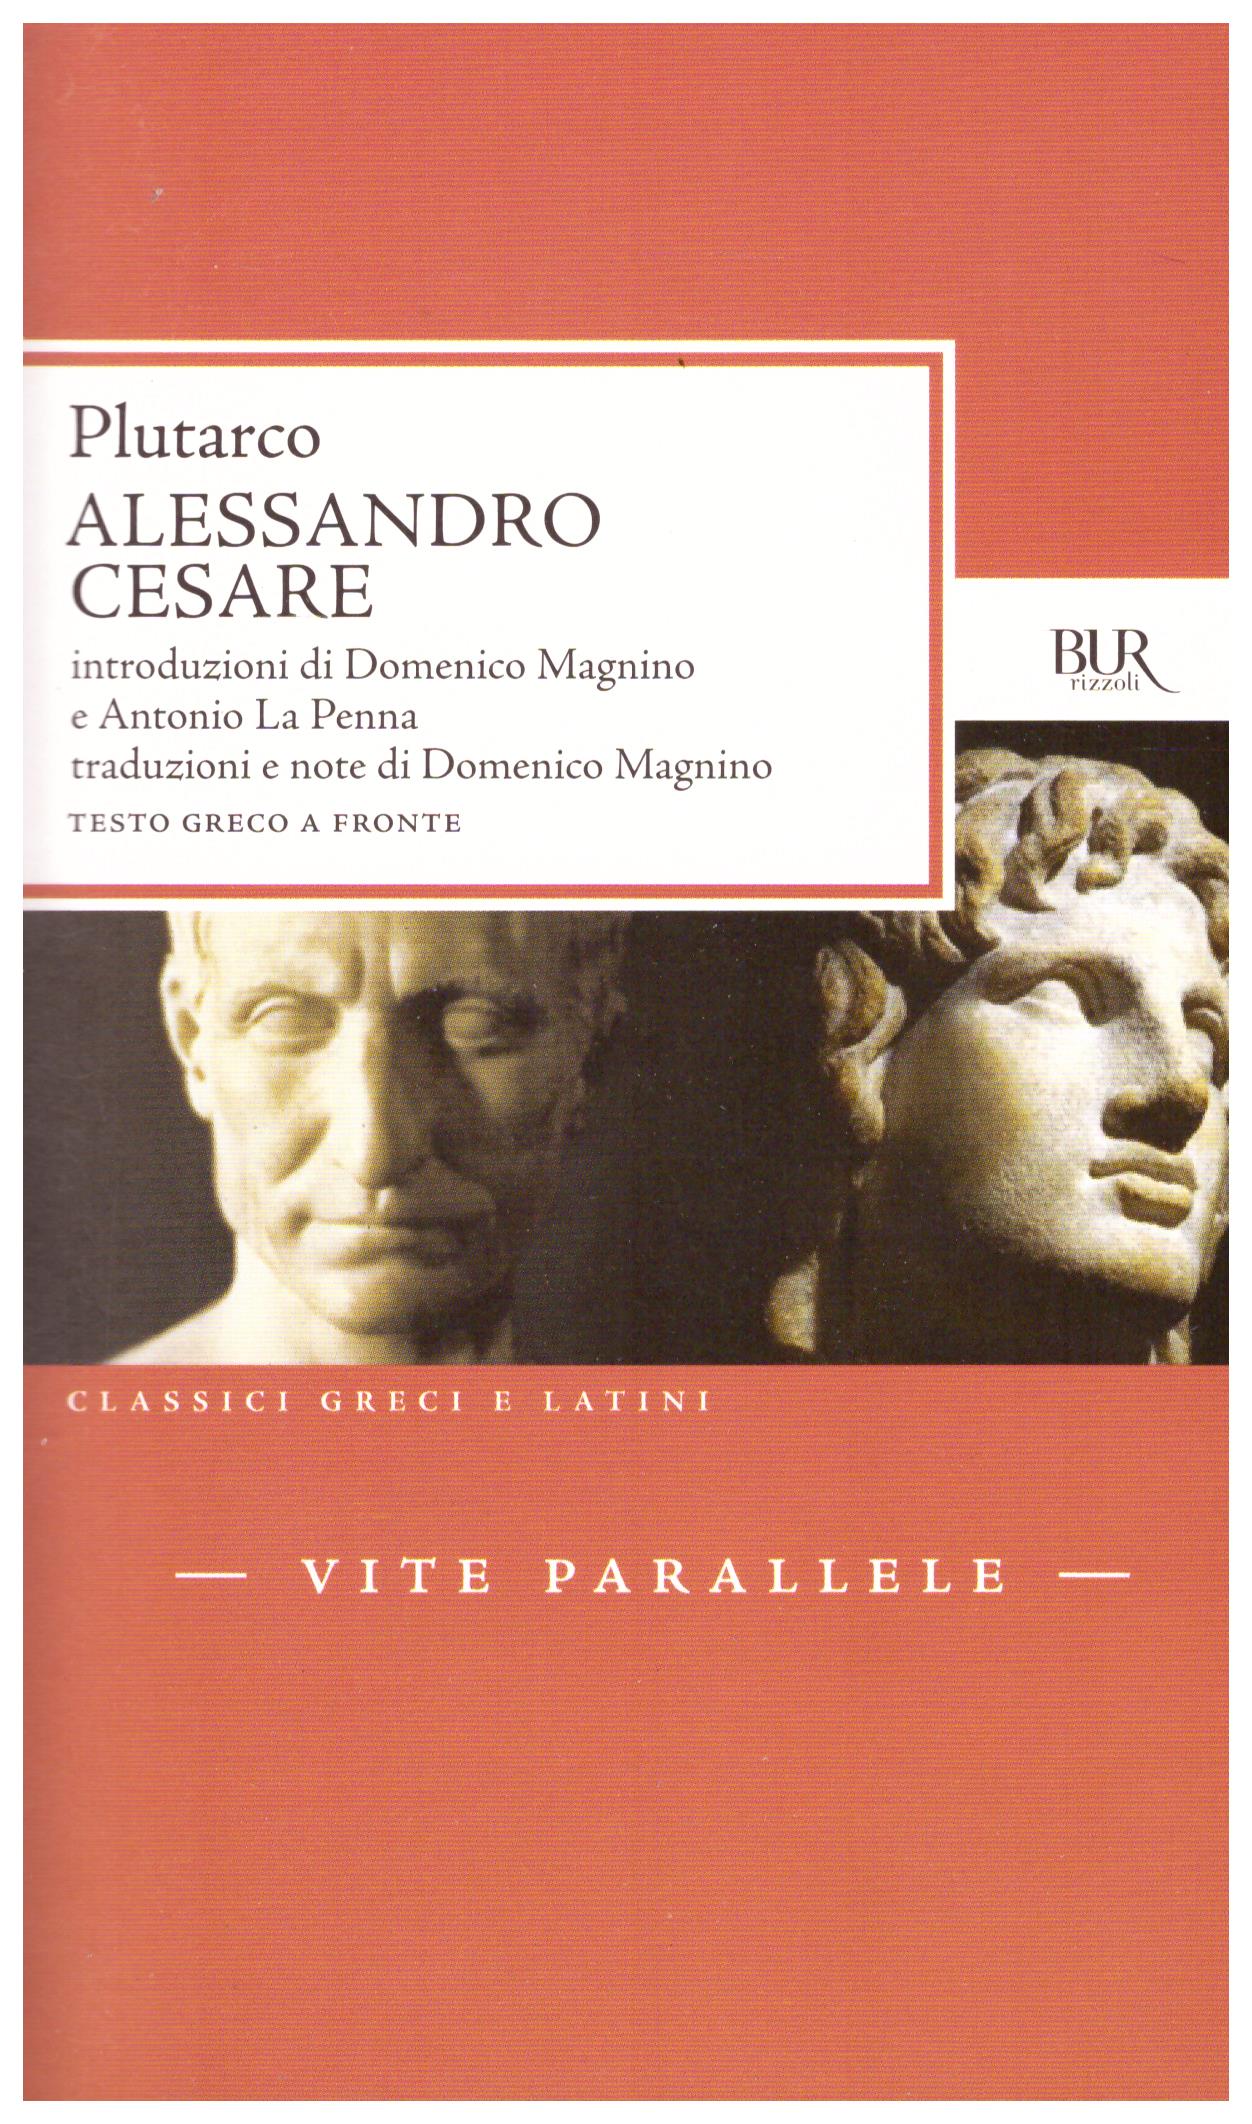 Titolo: Alessandro, Cesare Autore: Plutarco Editore: Bur, 2012